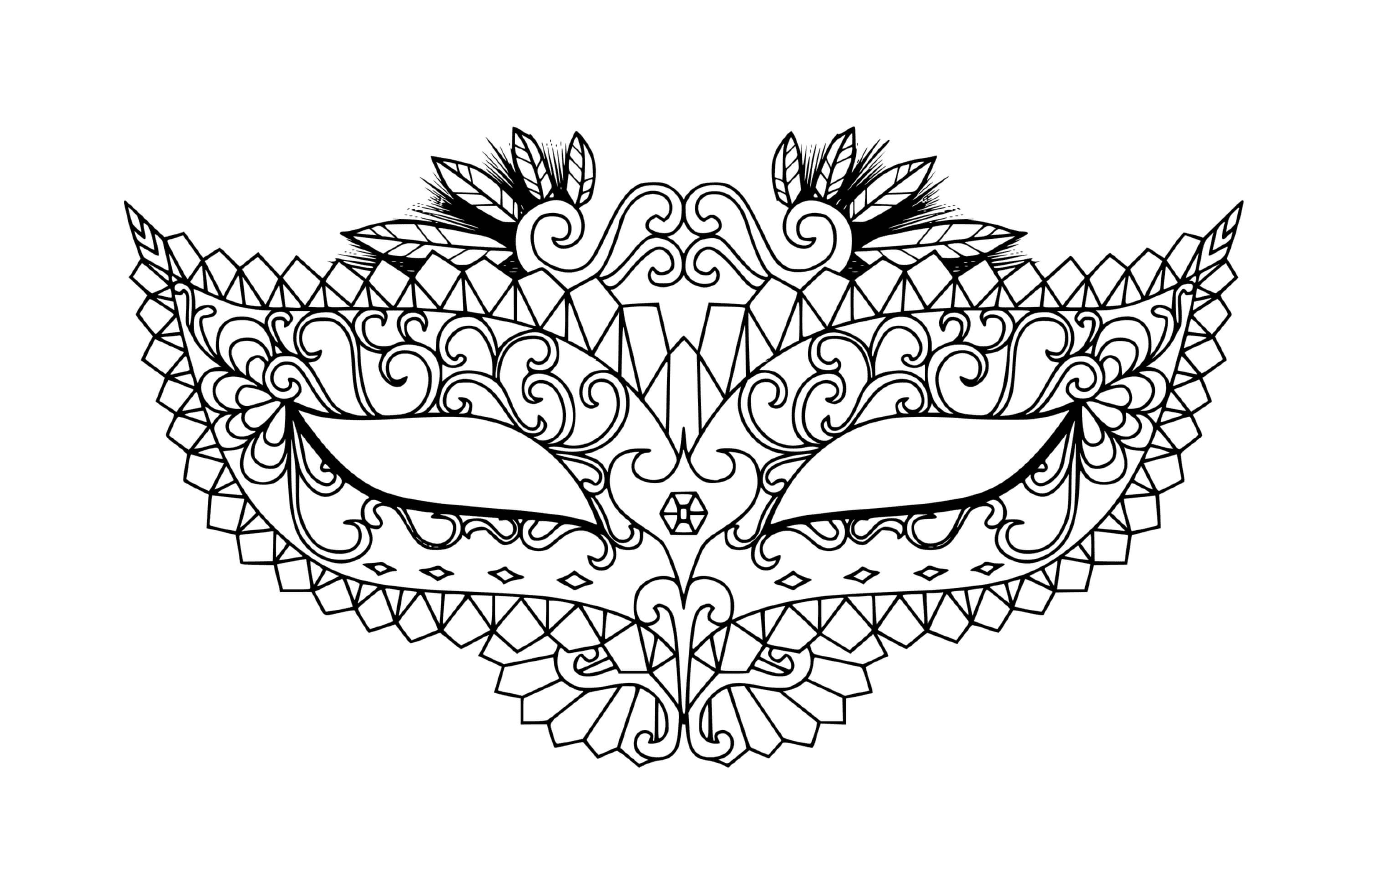  Maschera di carnevale moderna, una maschera 